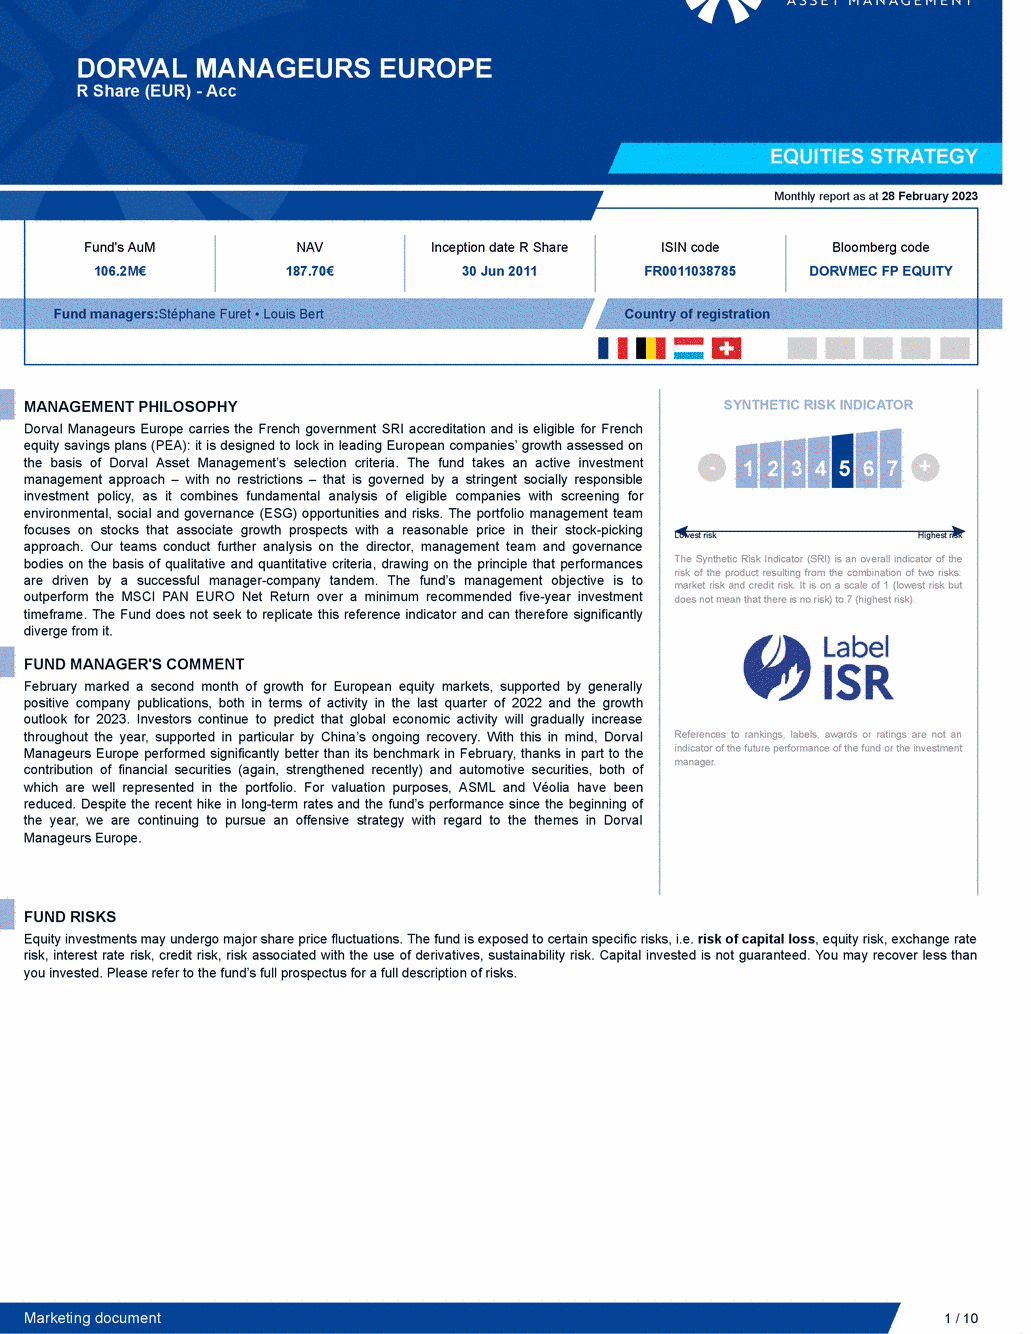 Reporting DORVAL MANAGEURS EUROPE - 28/02/2023 - Anglais